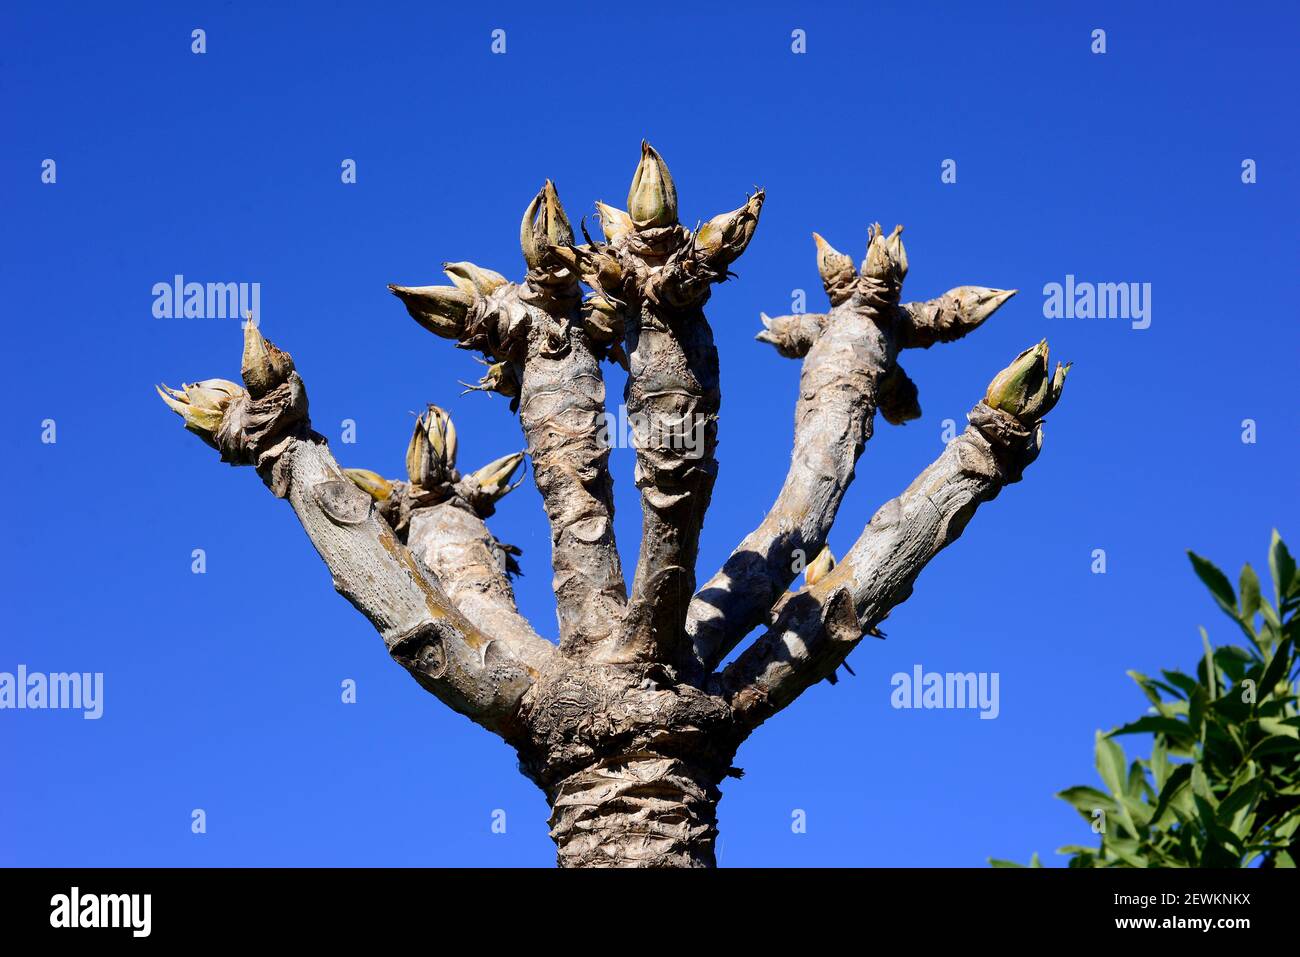 El árbol de la col rizada (Cussonia spicata) es un árbol perenne medicinal nativo del sureste de África. Brotes. Foto de stock